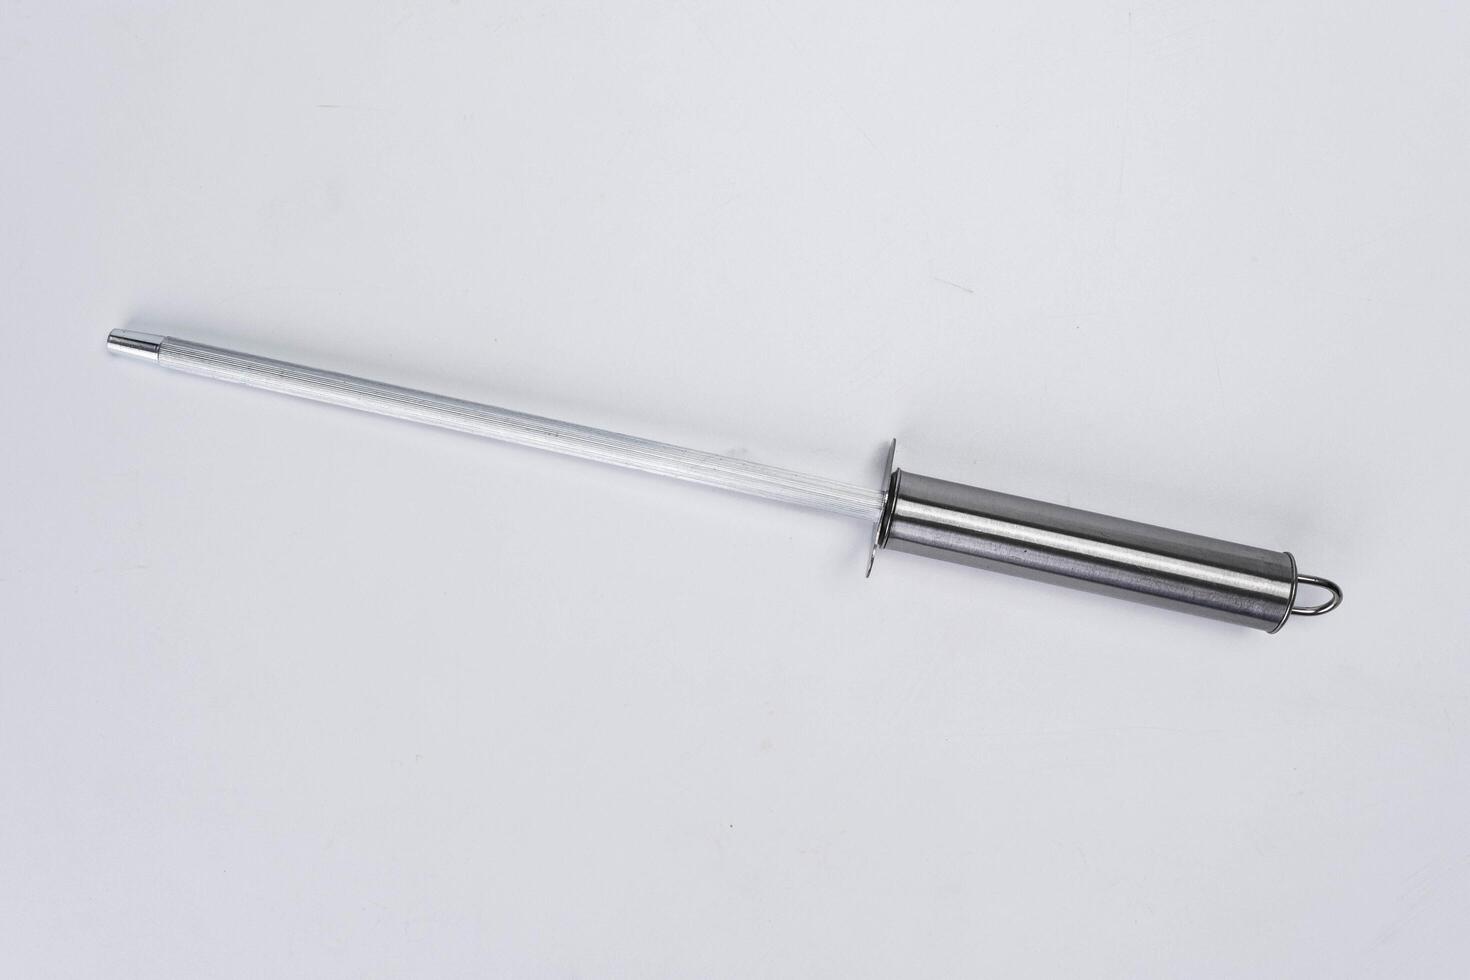 Whetstone sharpener or grindstone isolated on white background. close-up knife grinder photo